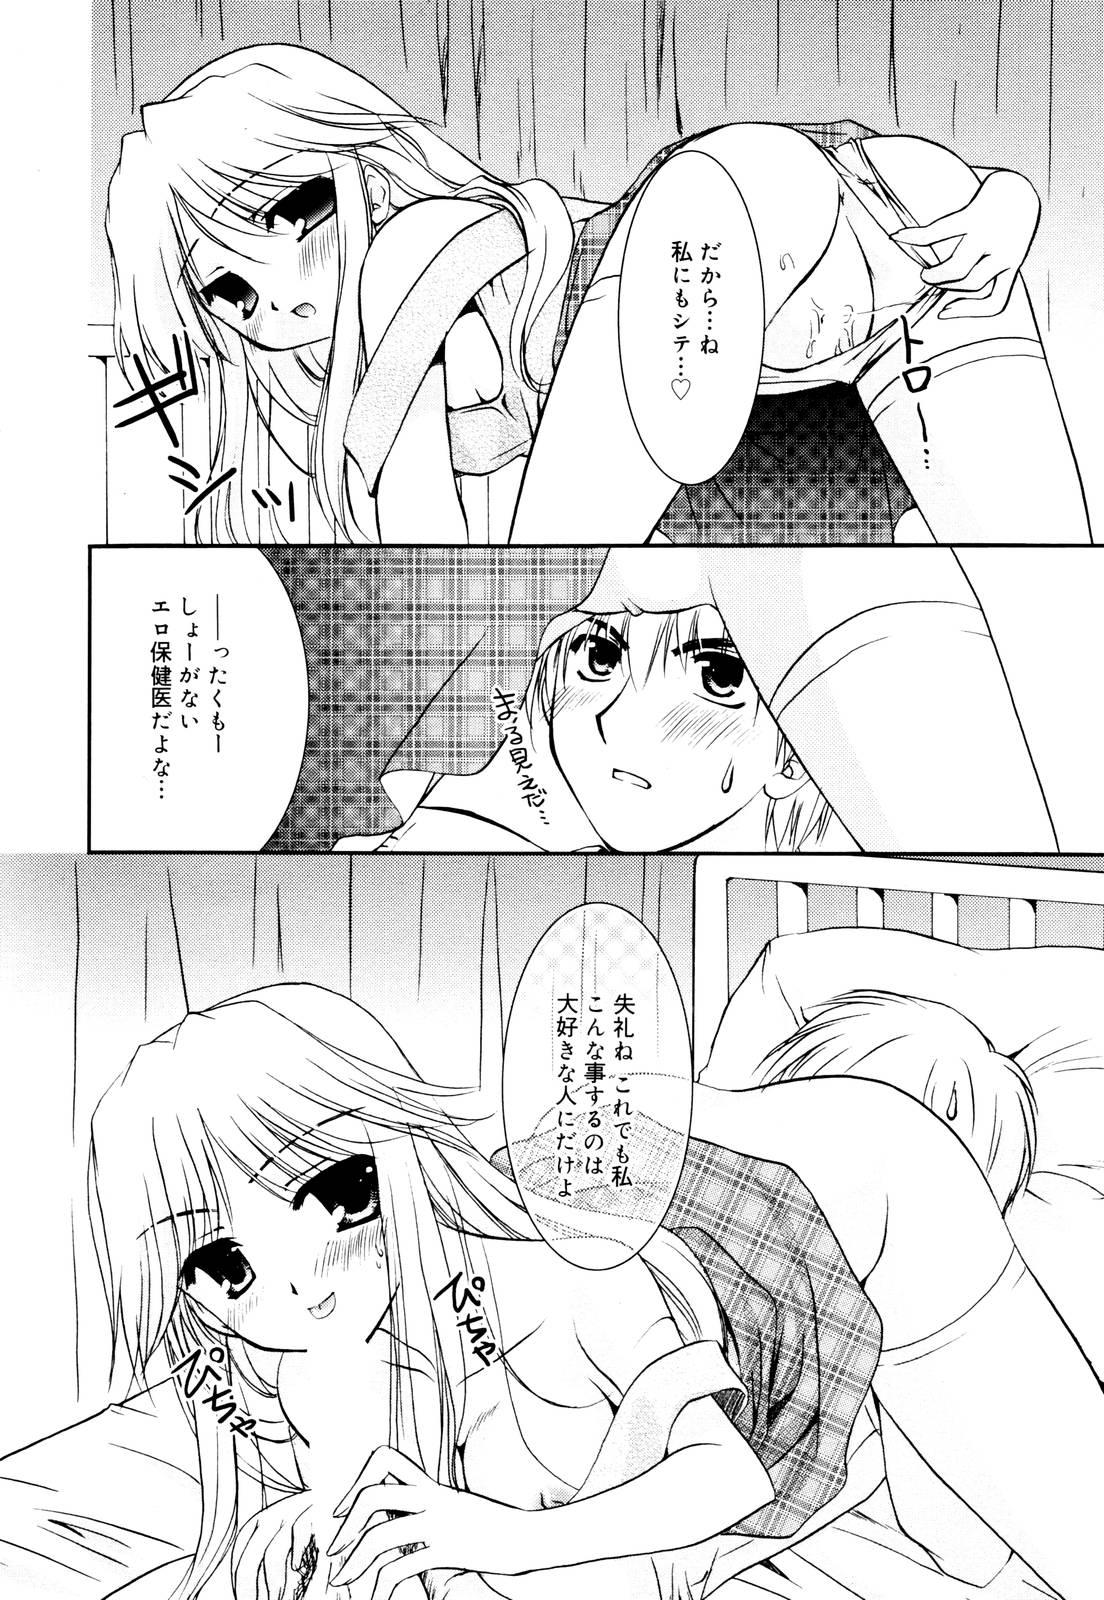 Manga Bangaichi 2006-01 page 30 full